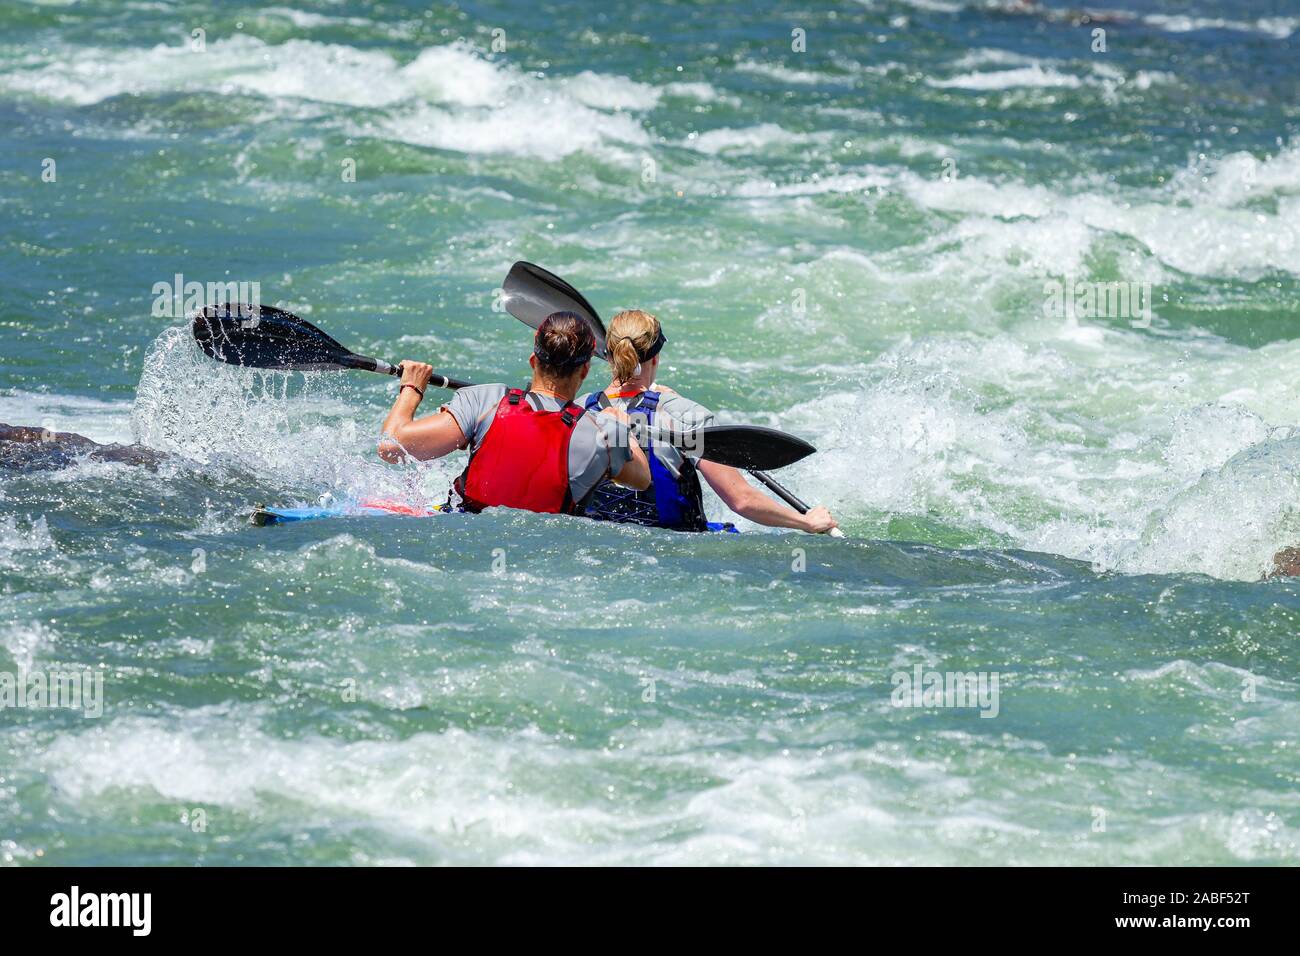 Frauen Paare im Kanu Rennen hinten Aktion Foto des Flusses Felsen Rapids mit paddlern durch hetzende rauhen Gewässern. Stockfoto